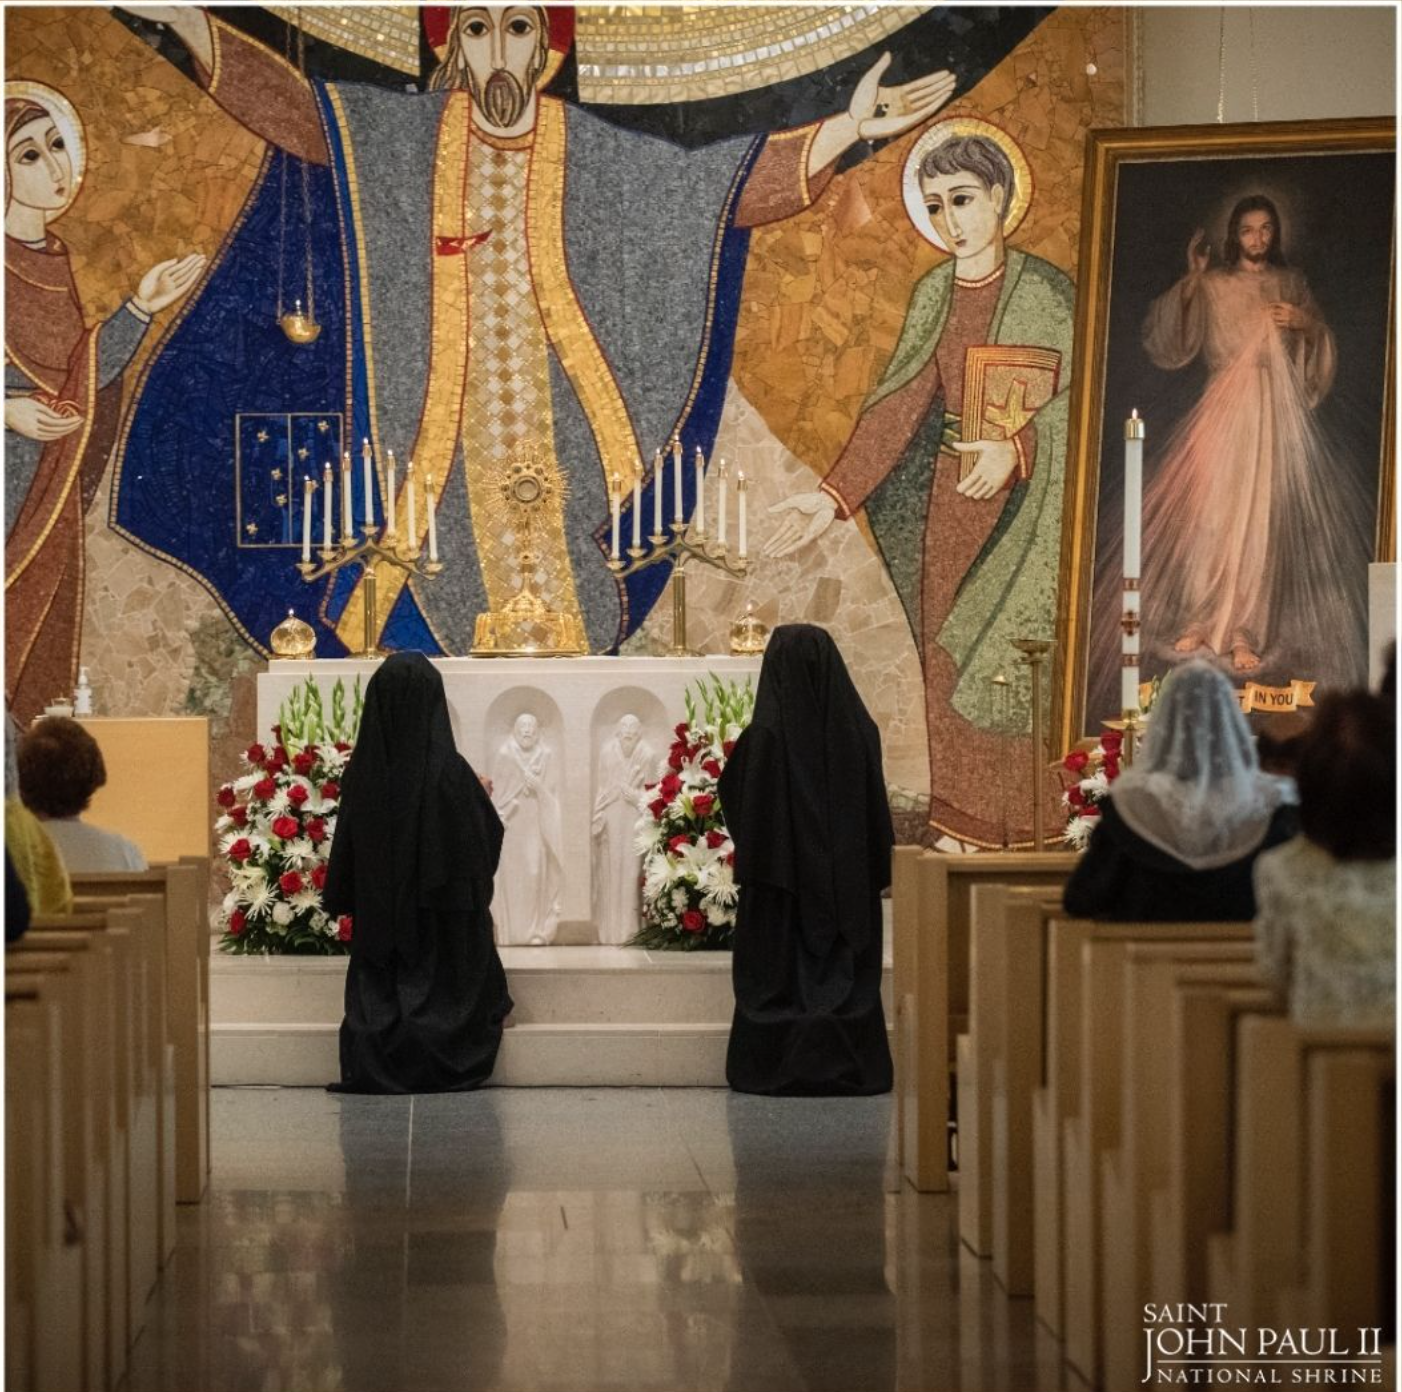 Las Hermanas de Nuestra Señora de la Misericordia rezan en la  capilla 'Redemptor Hominis' del Santuario Nacional de San Juan Pablo II en Washington DC, que fue decorada con mosaicos del P. Marko Rupnik. Foto de instagram del Santuario de septiembre de 2021.